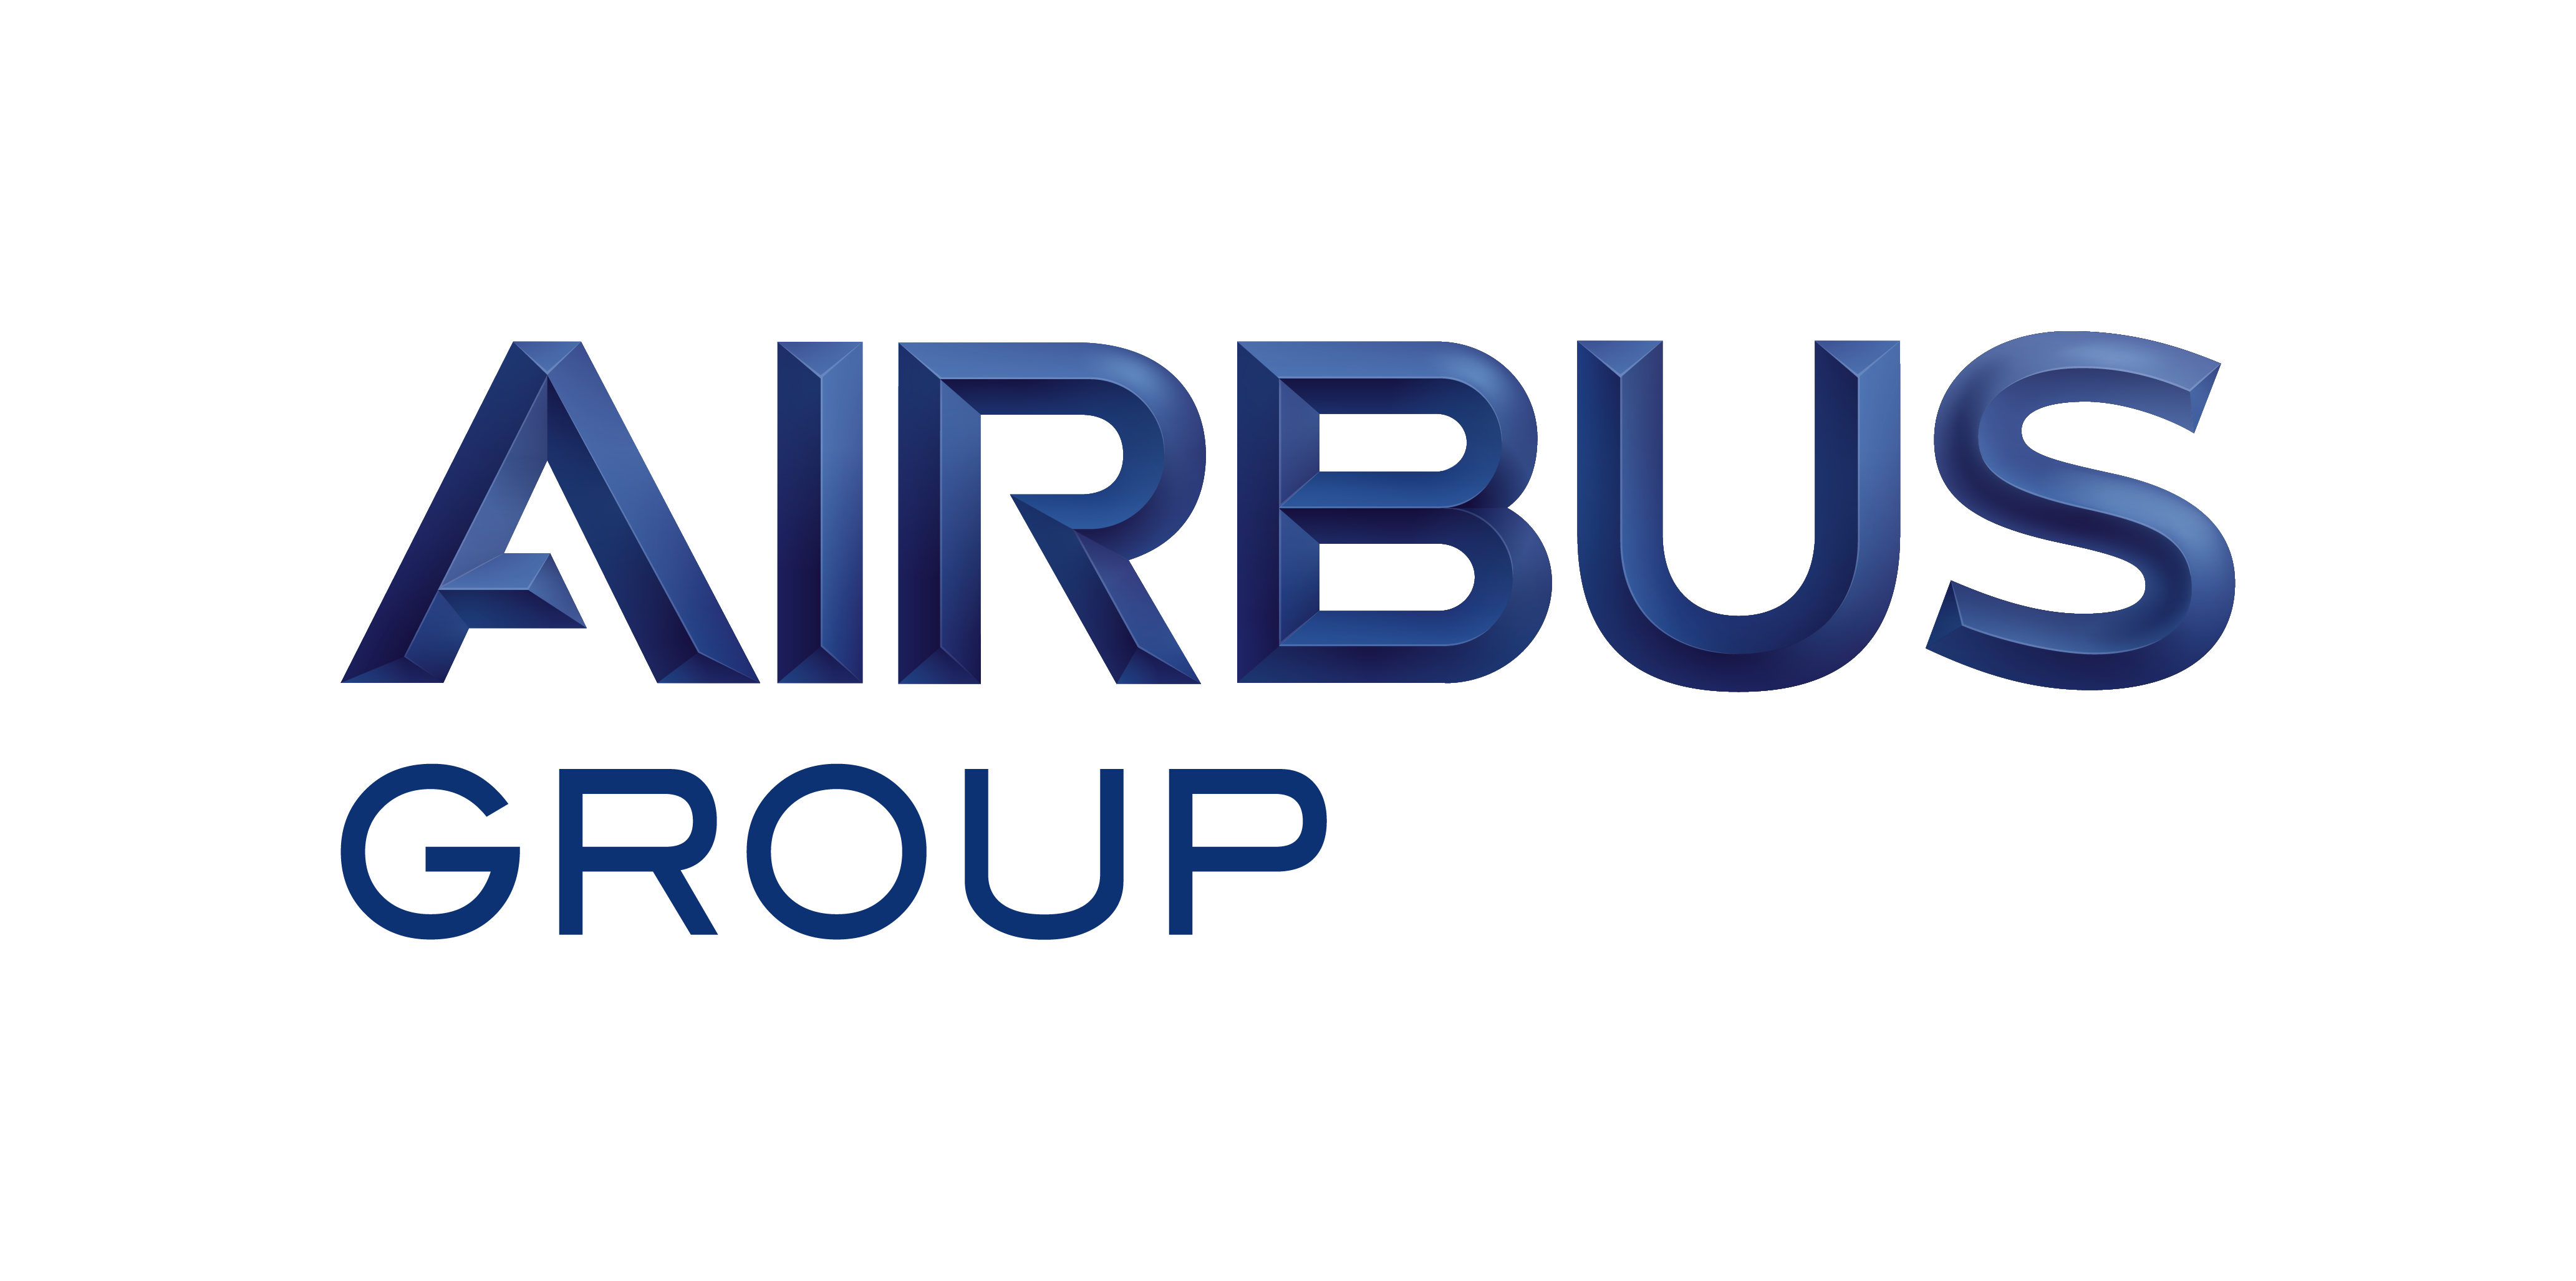 AIRBUS Logo. Format: EPS